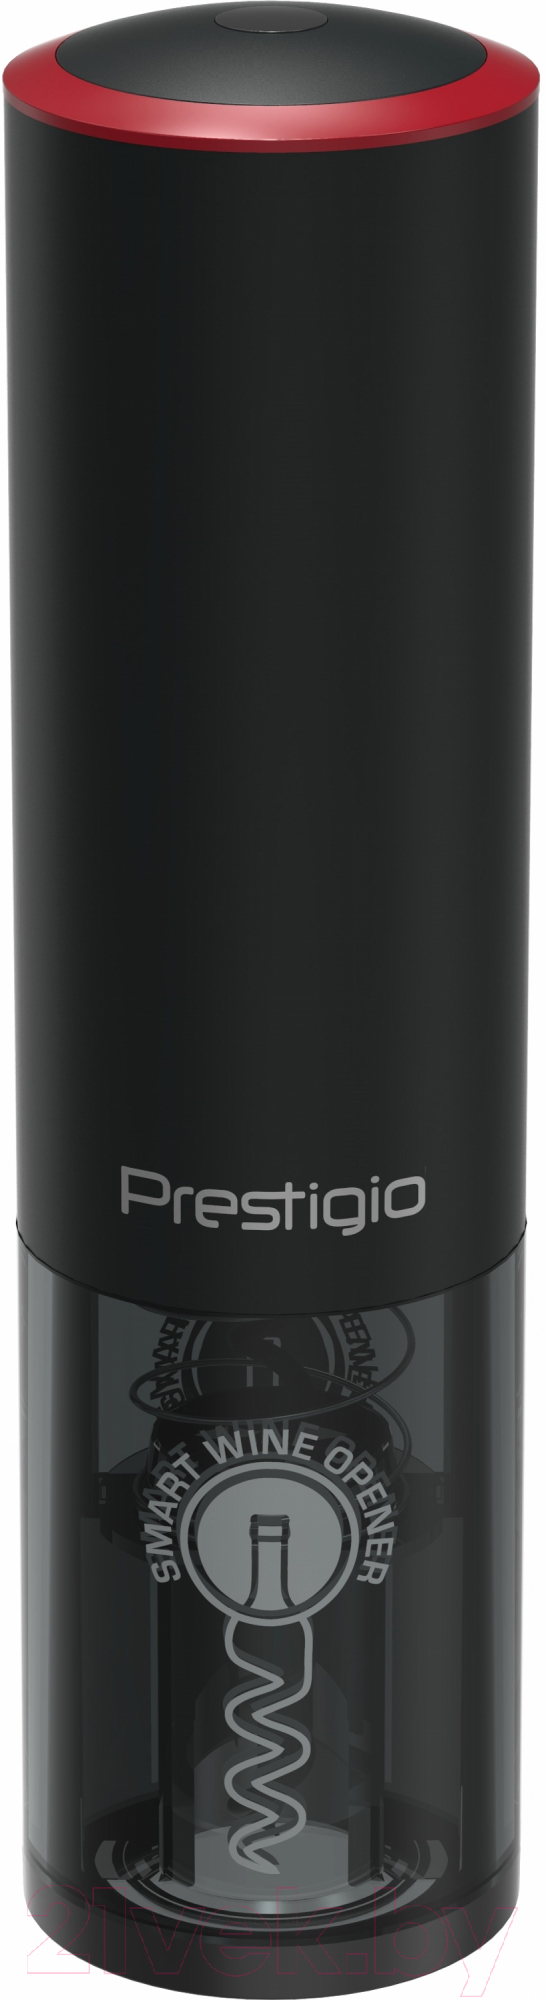 Электроштопор Prestigio Lugano Smart Wine Opener / PWO102BK